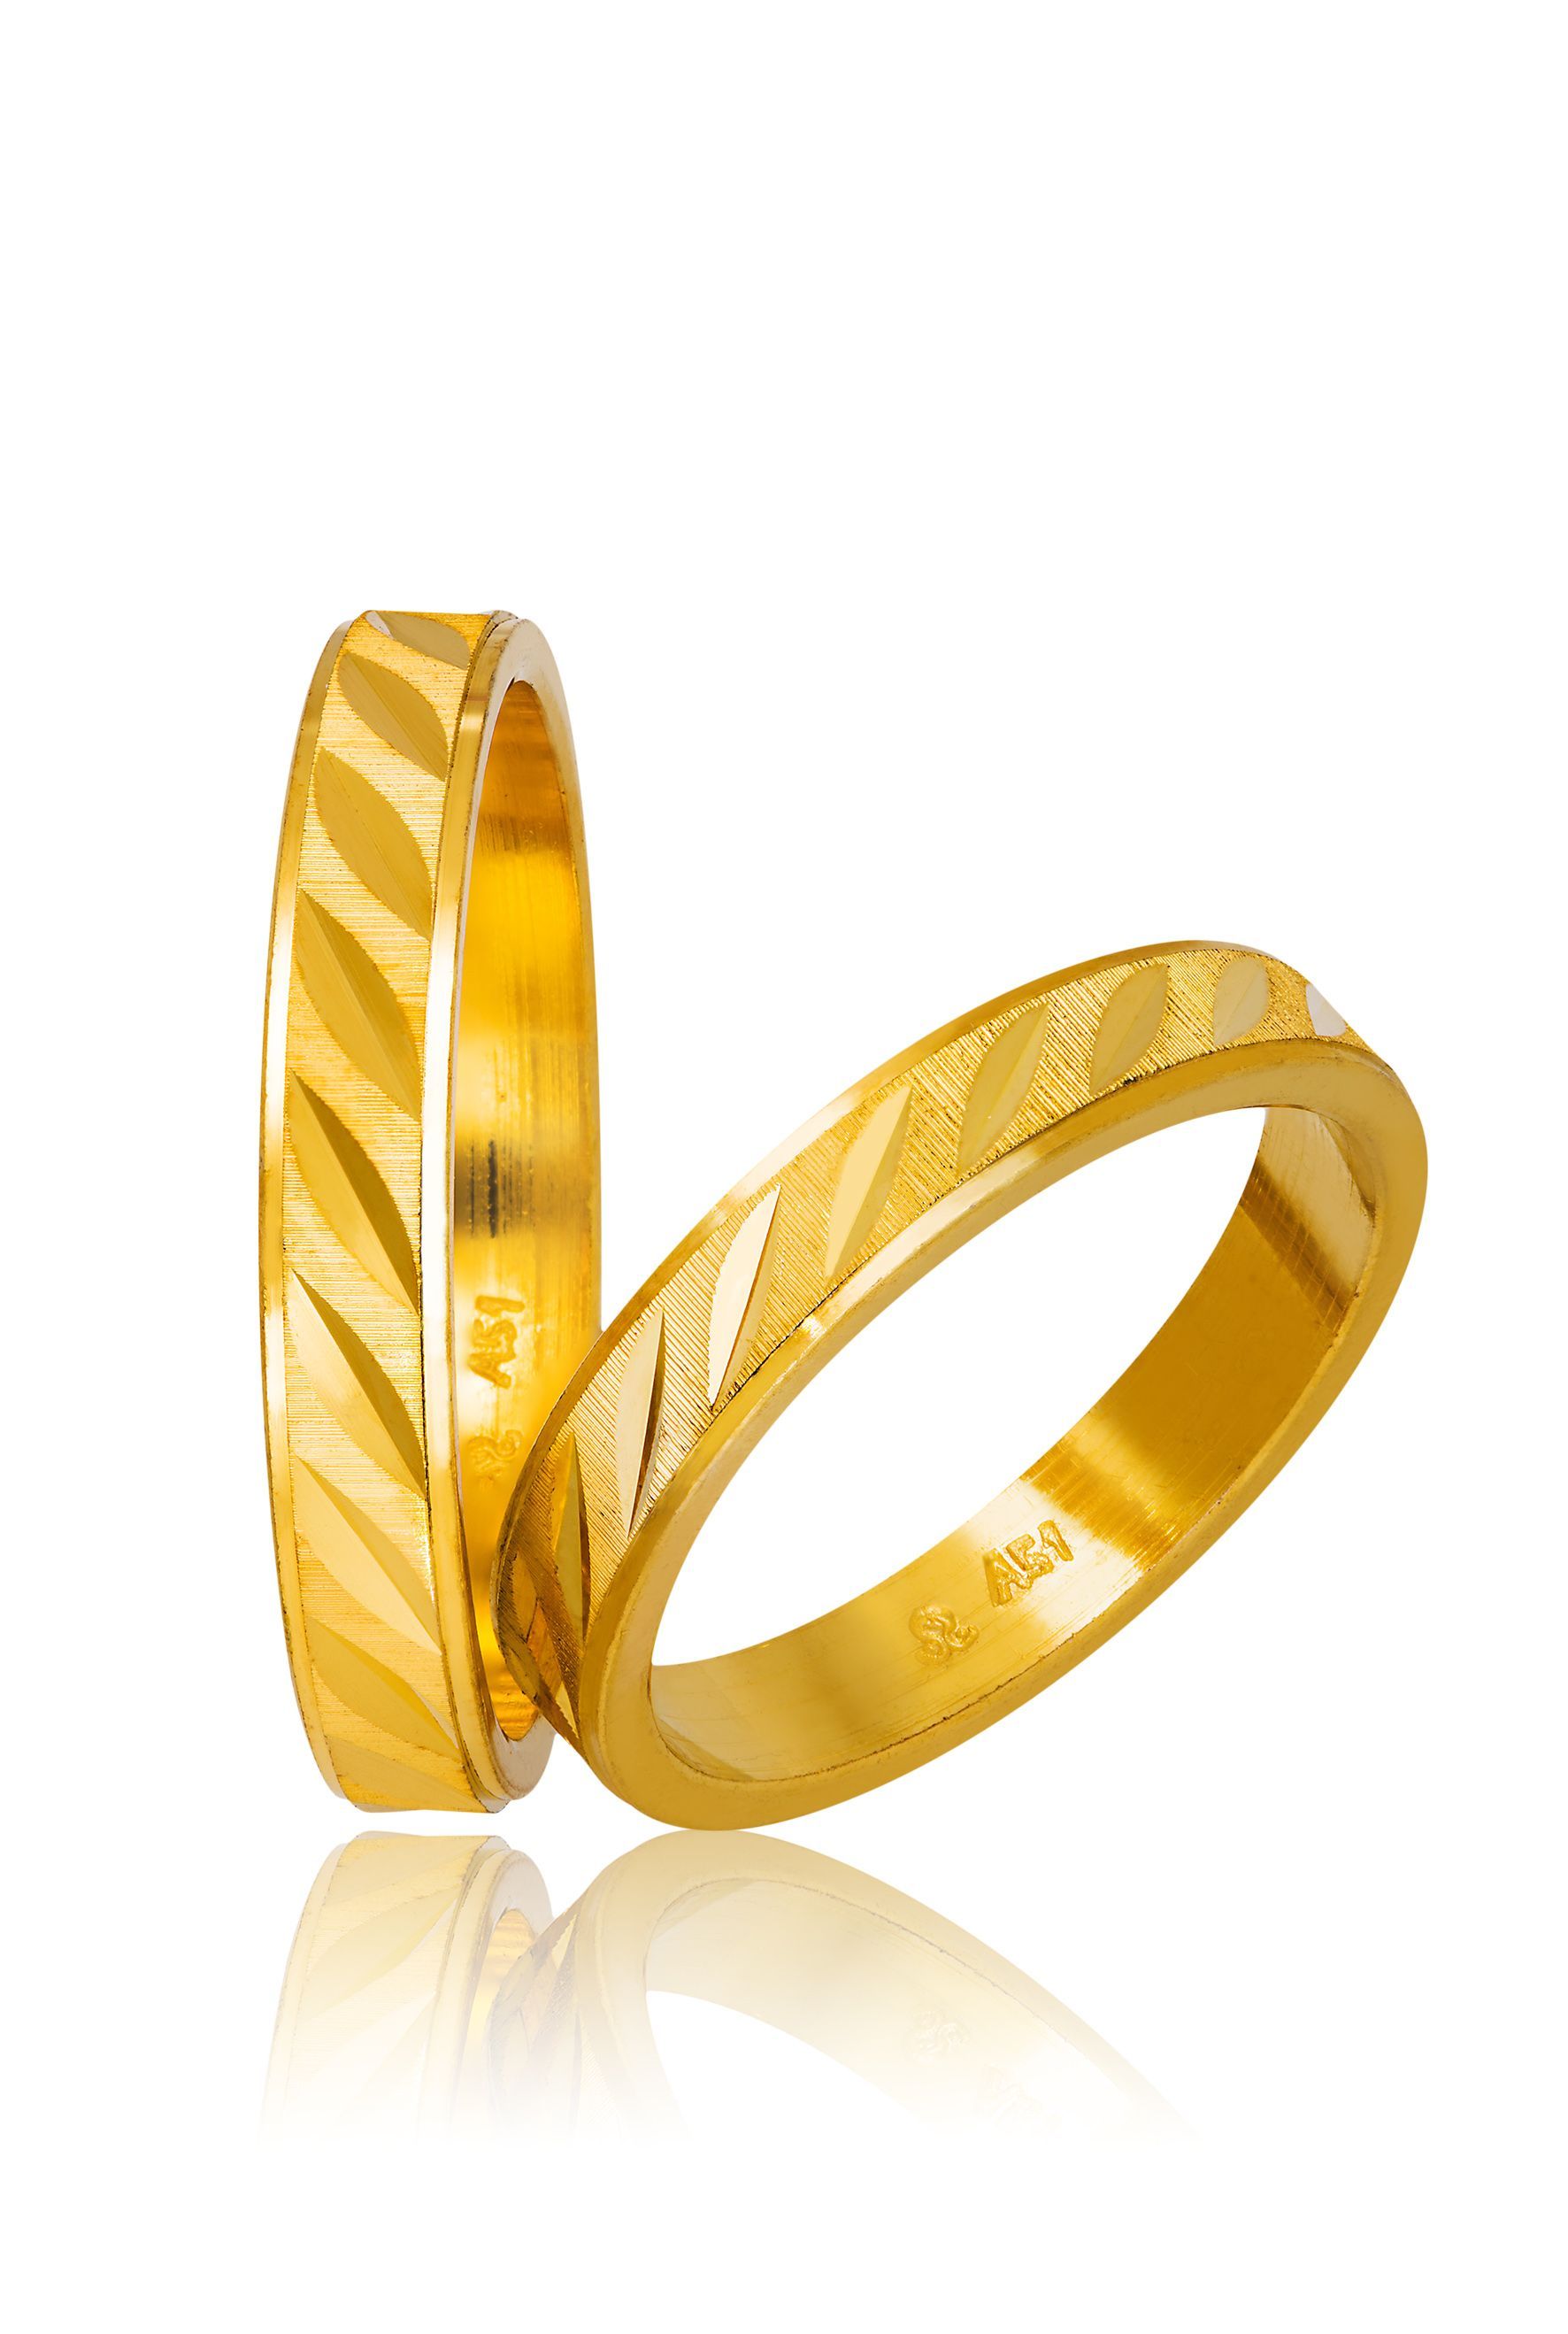 Golden wedding rings 3.6mm (code 755)